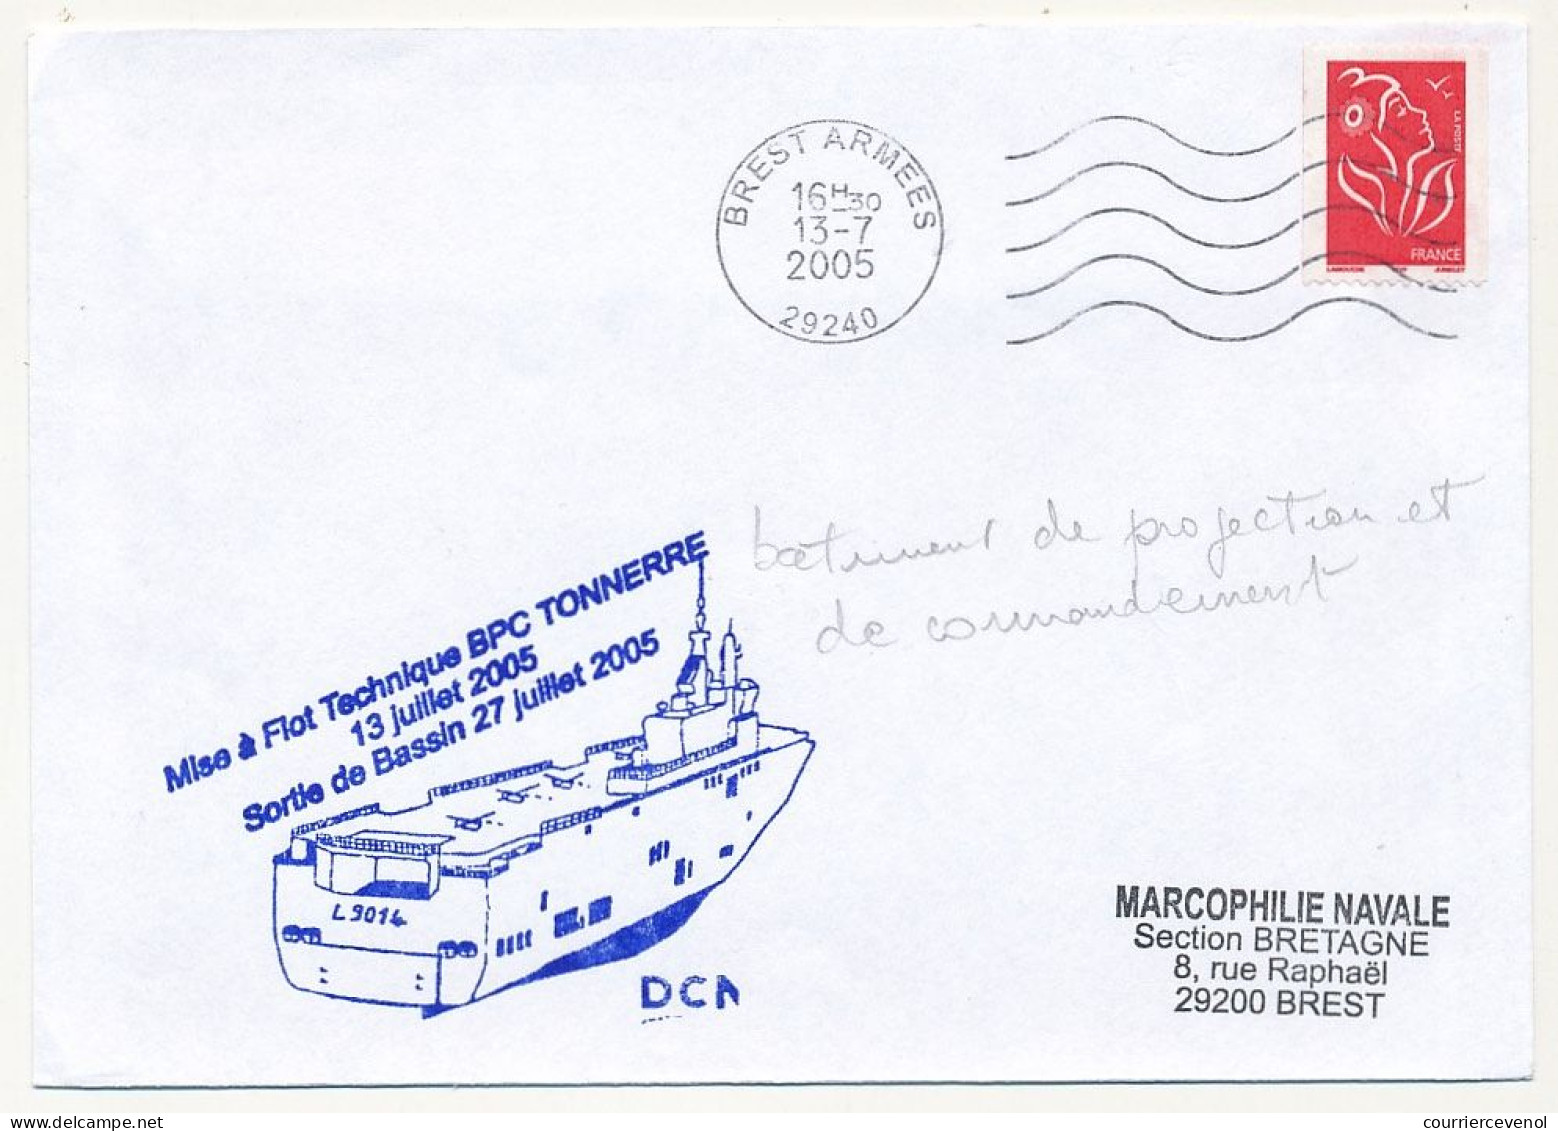 FRANCE - Env. Aff. Lamouche OMEC Brest Armées 13/7/2005 + "Mise à Flot Technique BPC TONNERRE ..." - Seepost